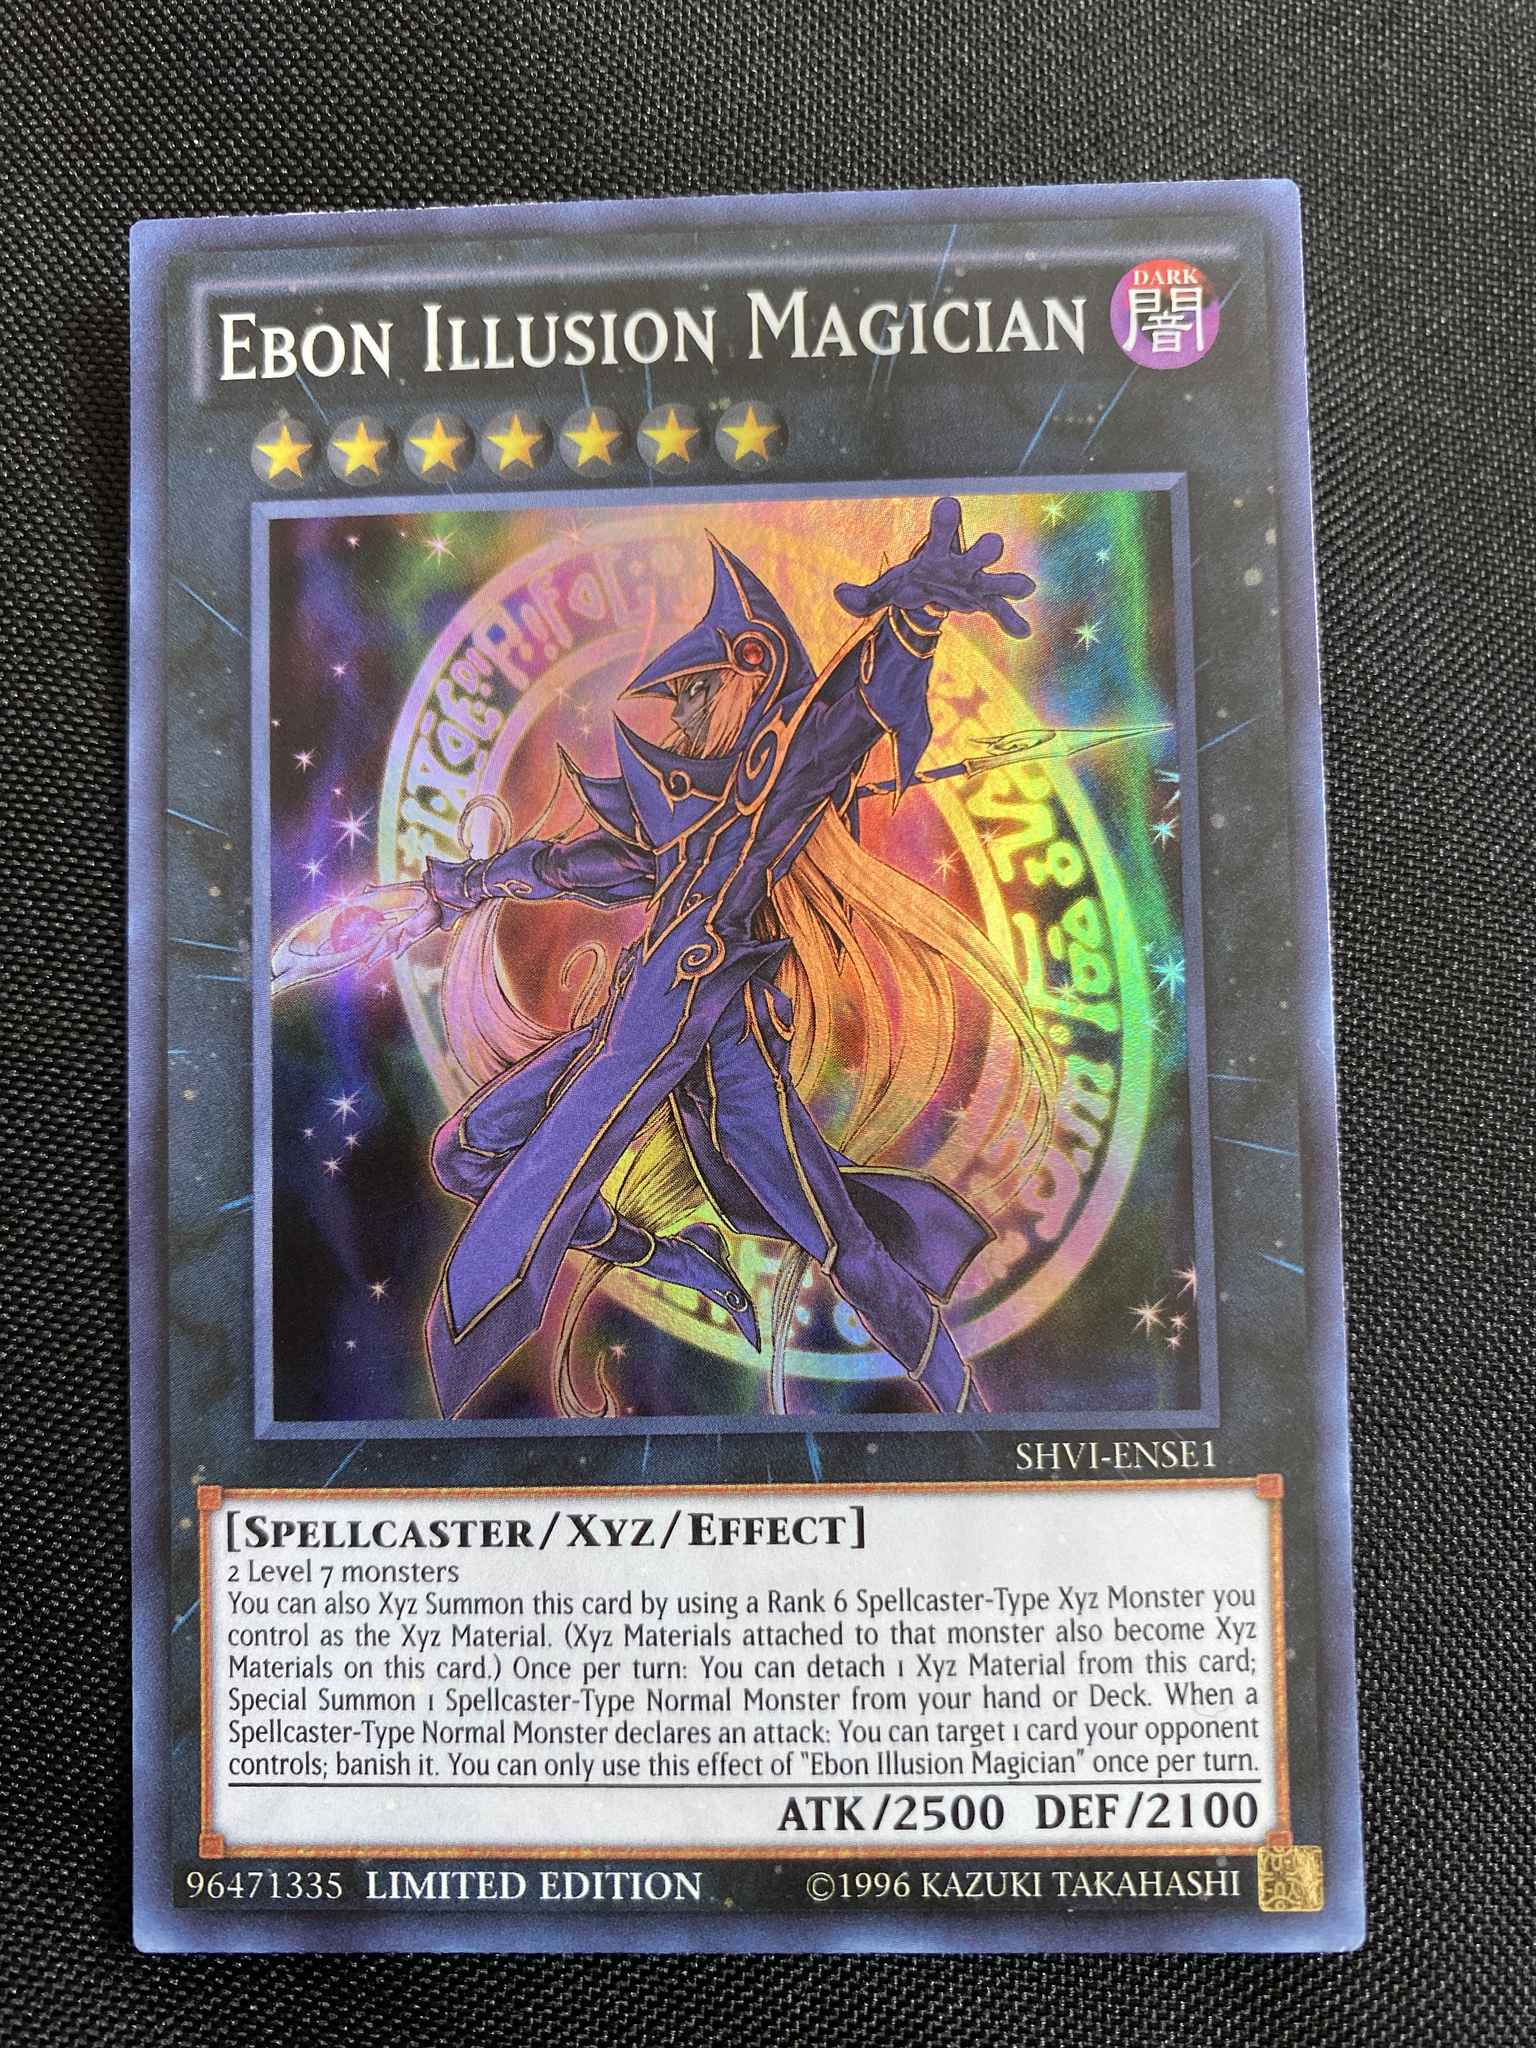 Ebon Illusion Magician SHVI ENSE1 Super Rare Limited Edition Yugioh